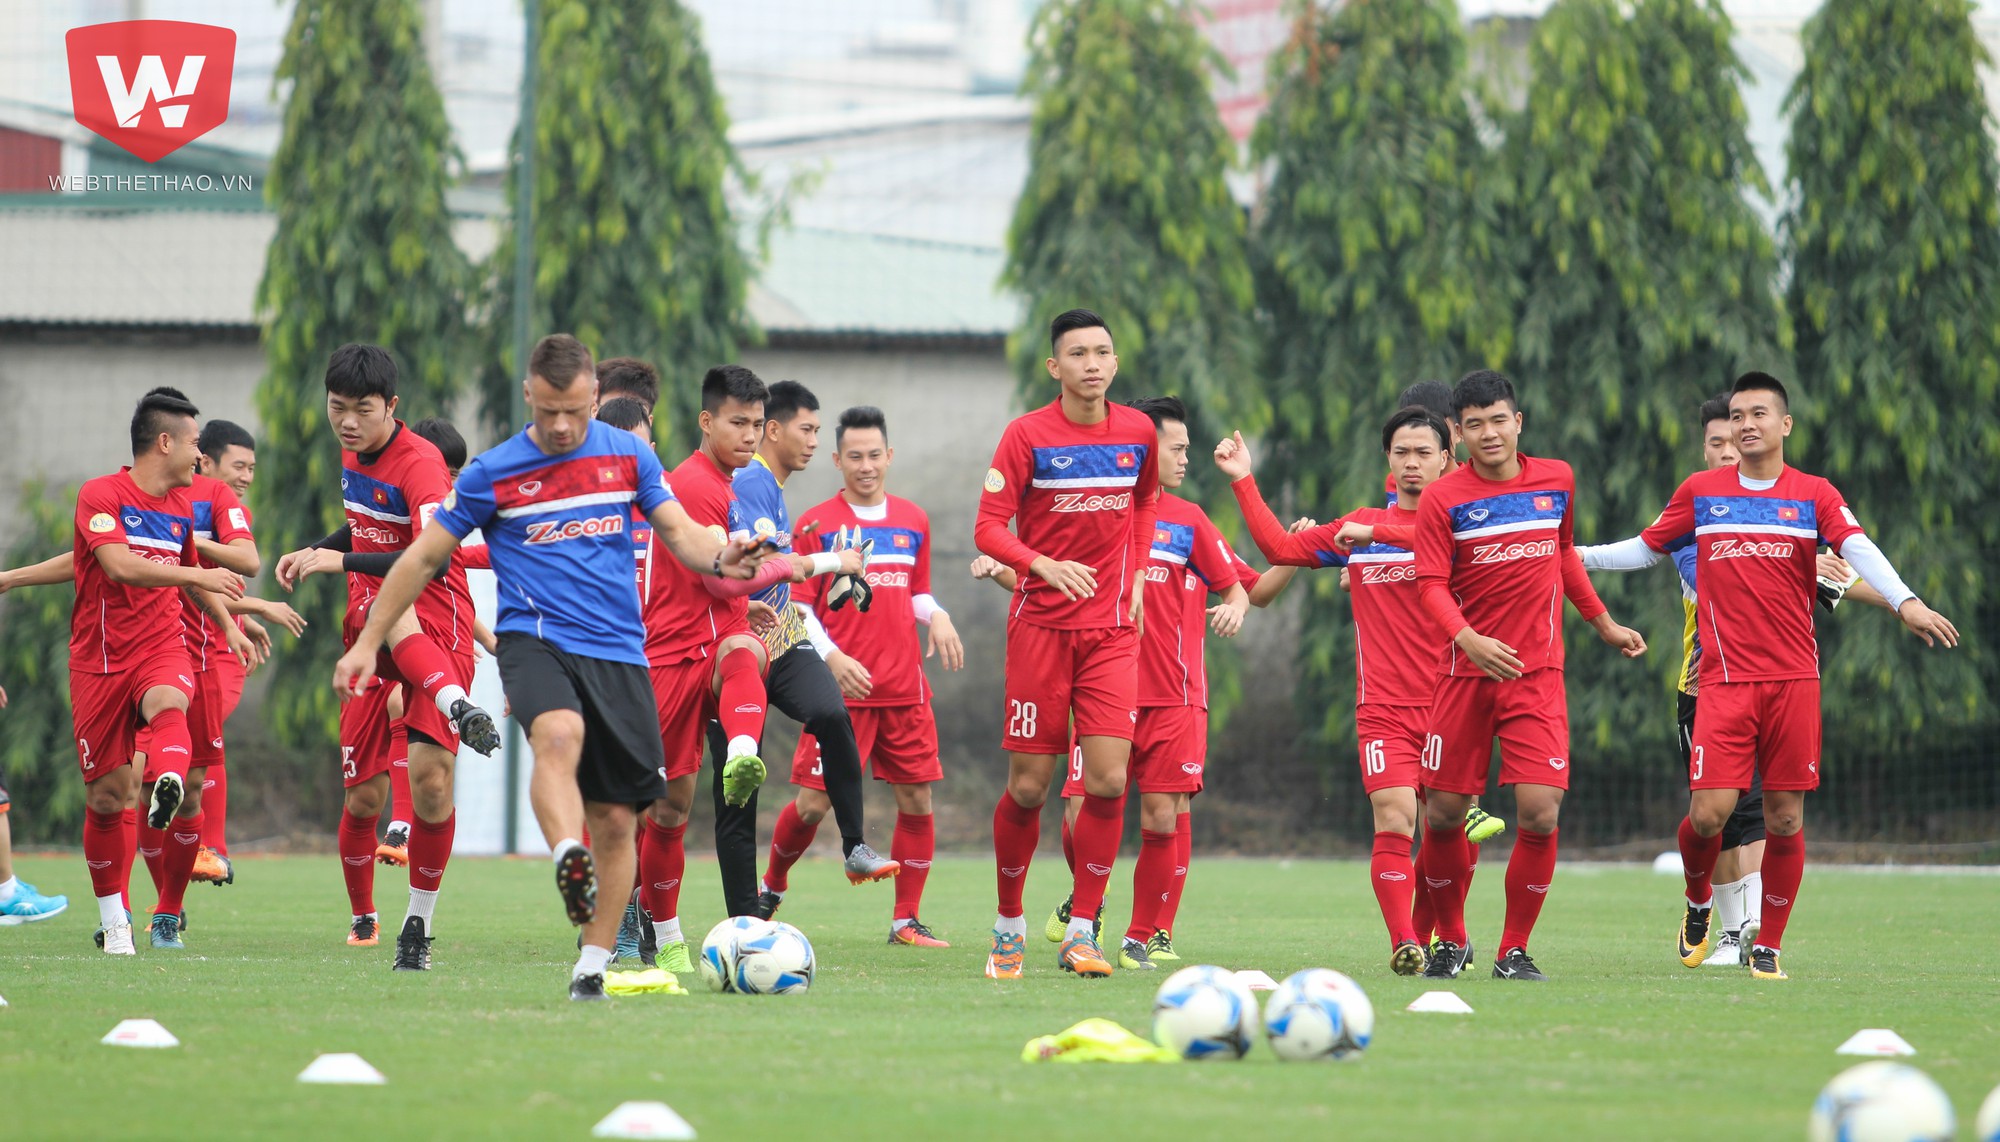 Đội tuyển Việt Nam đã có buổi tập đầu tiên chuẩn bị cho trận đấu với Afghanistan ở vòng loại Asian Cup 2019 vào sáng nay (7/11). Ảnh: Trung Thu.